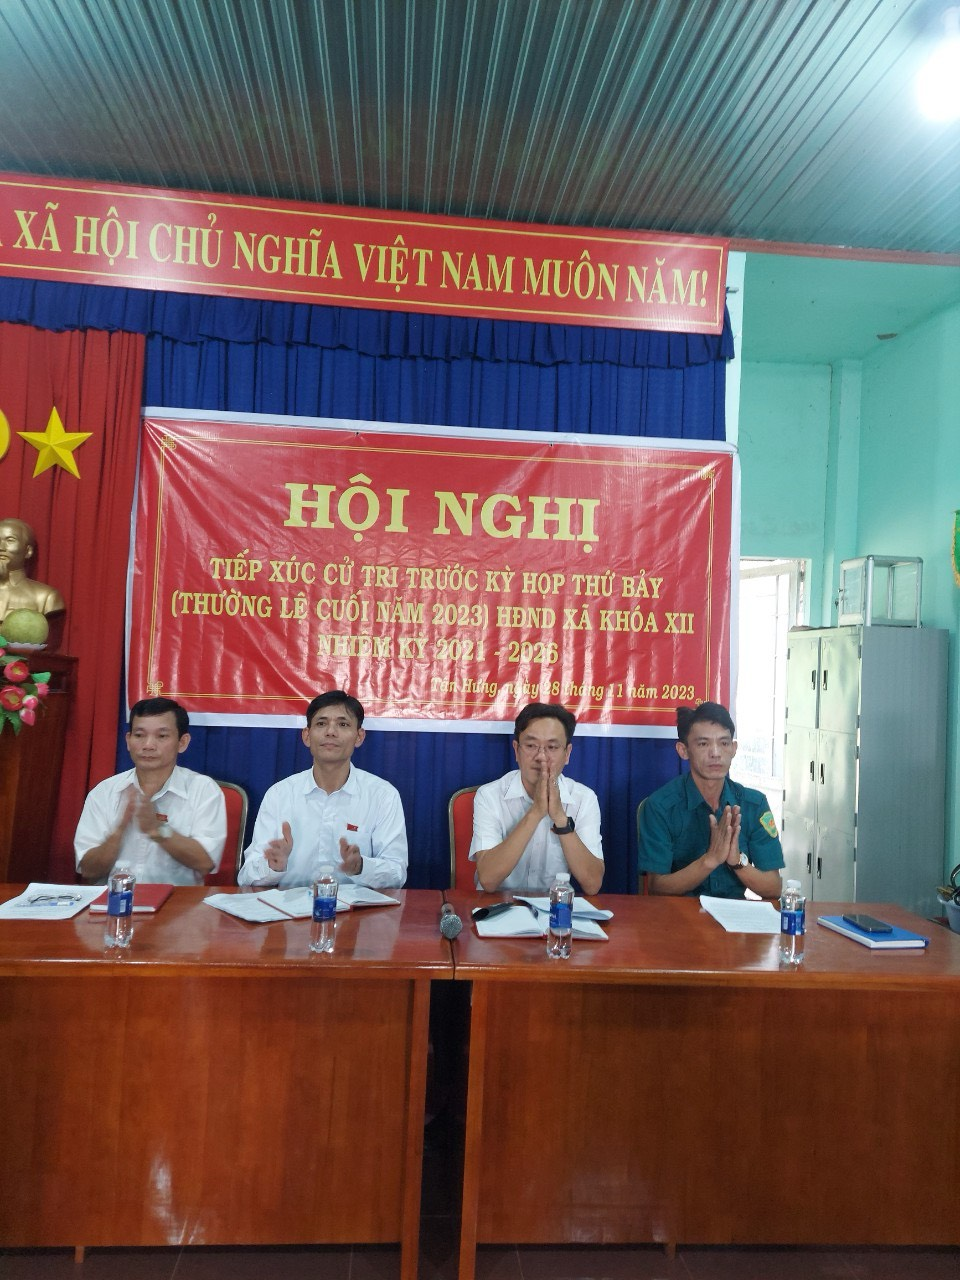 xã Tân Hưng tiếp xúc cử tri tai các ấp với Đại biểu HĐND xã Tân Hưng trước kỳ họp thứ 7 (thường lệ cuối năm 2023) tại văn phòng 5 ấp.